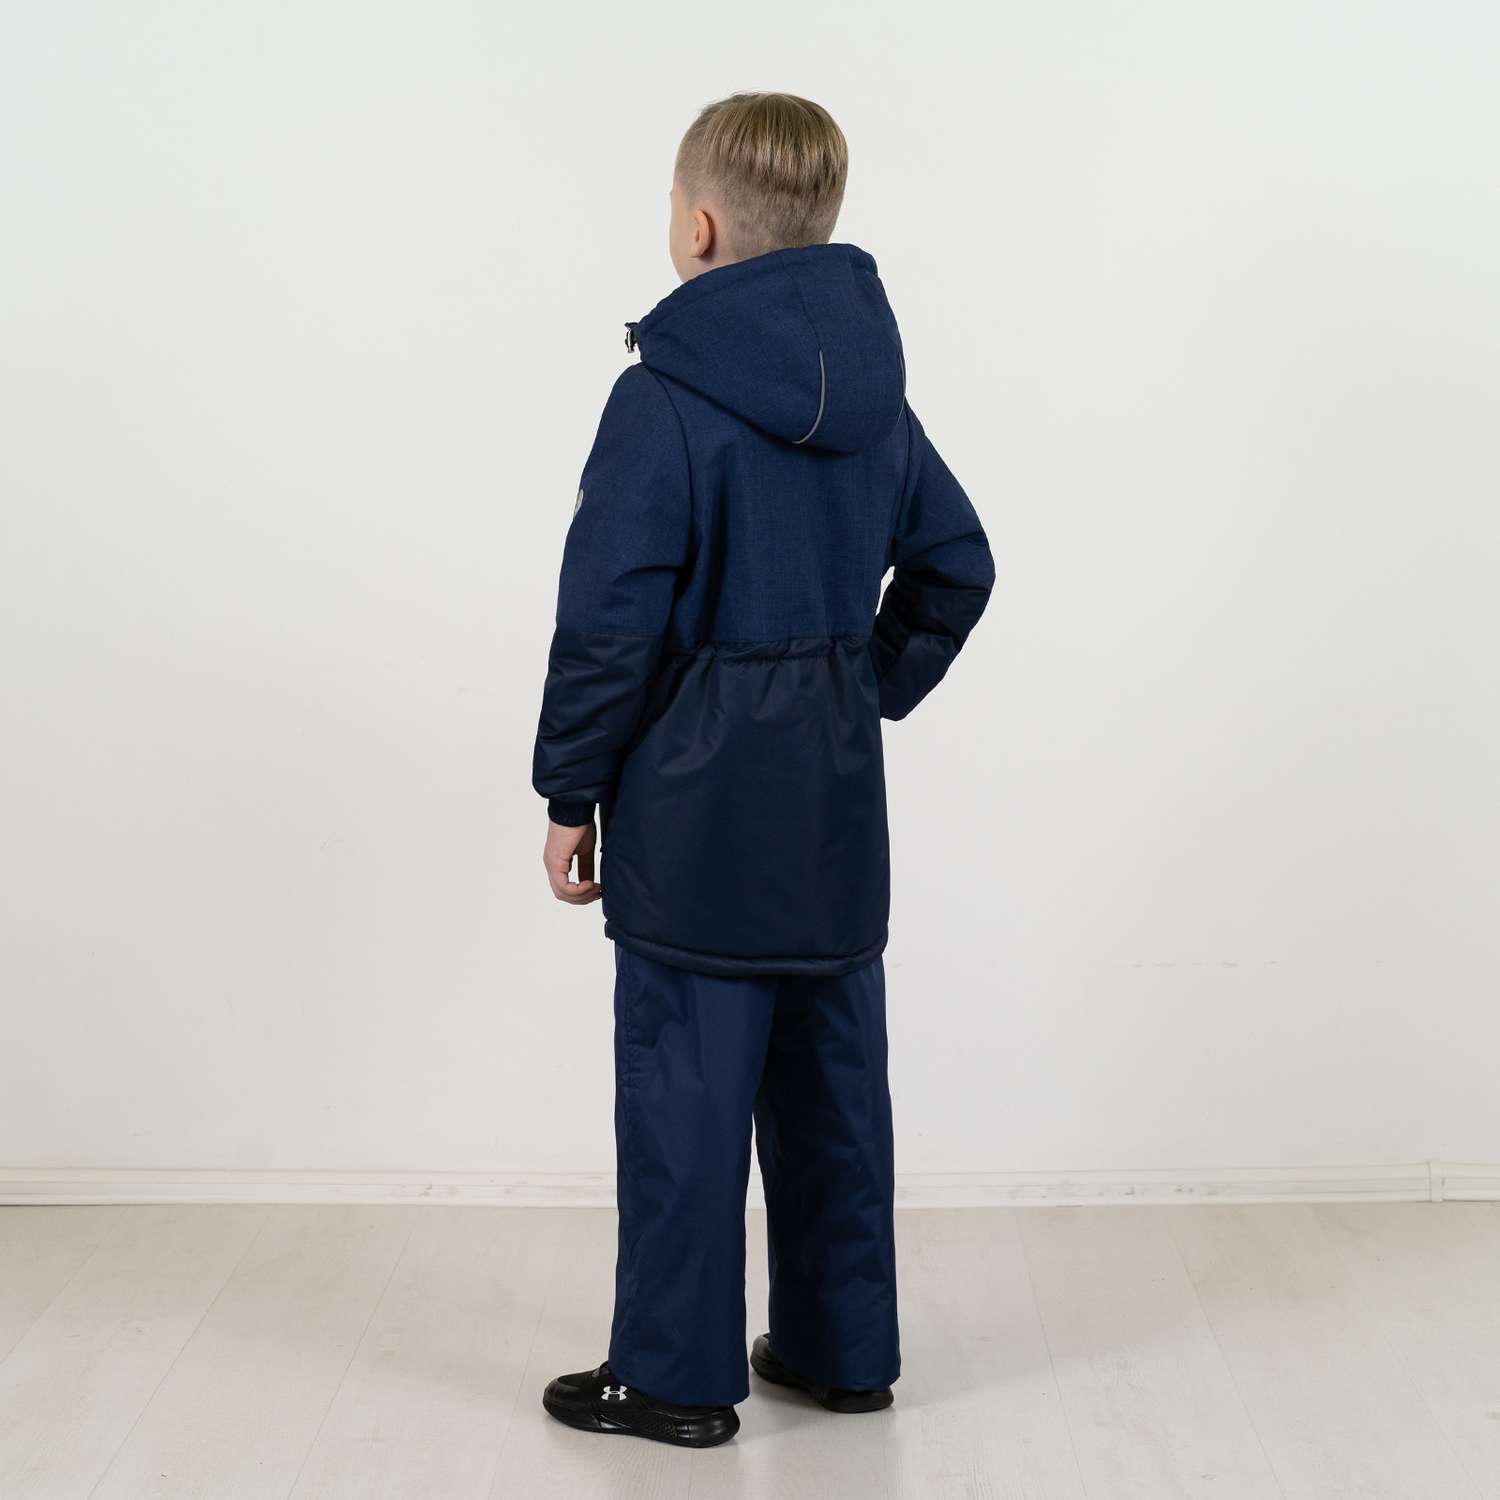 Куртка Arctic kids 70-046 темно-синий - фото 4